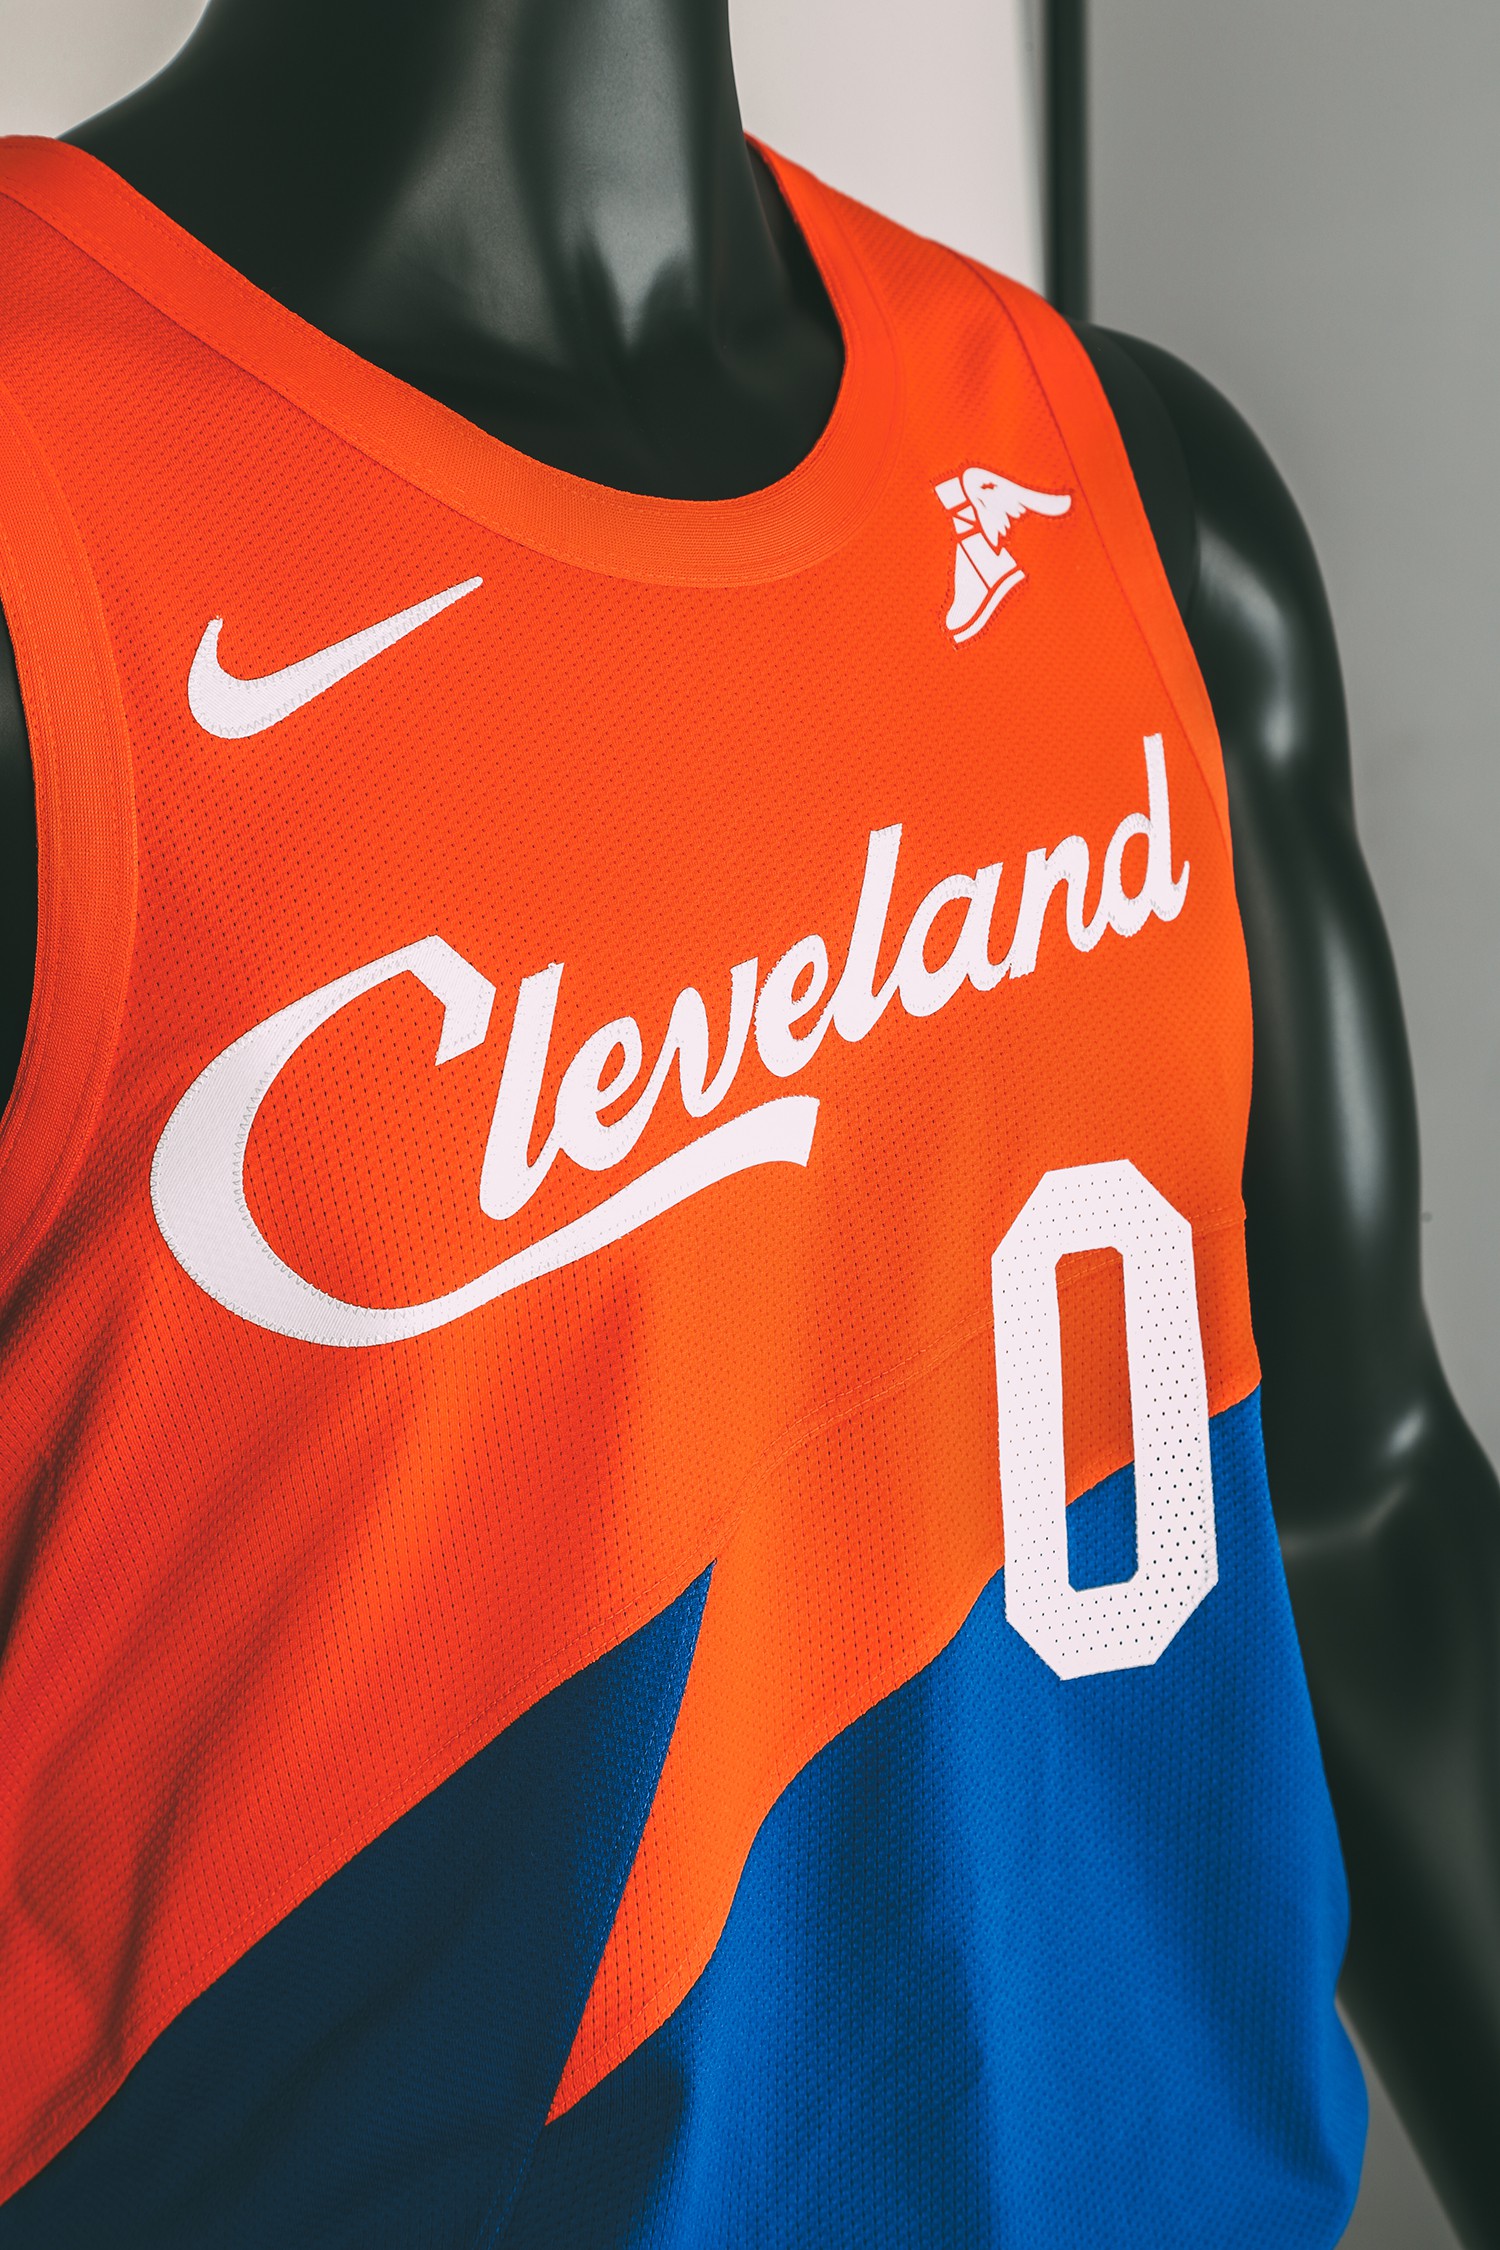 Cạn lời với phản ứng của cộng đồng mạng về đồng phục City Edition mới của Cleveland Cavaliers - Ảnh 3.